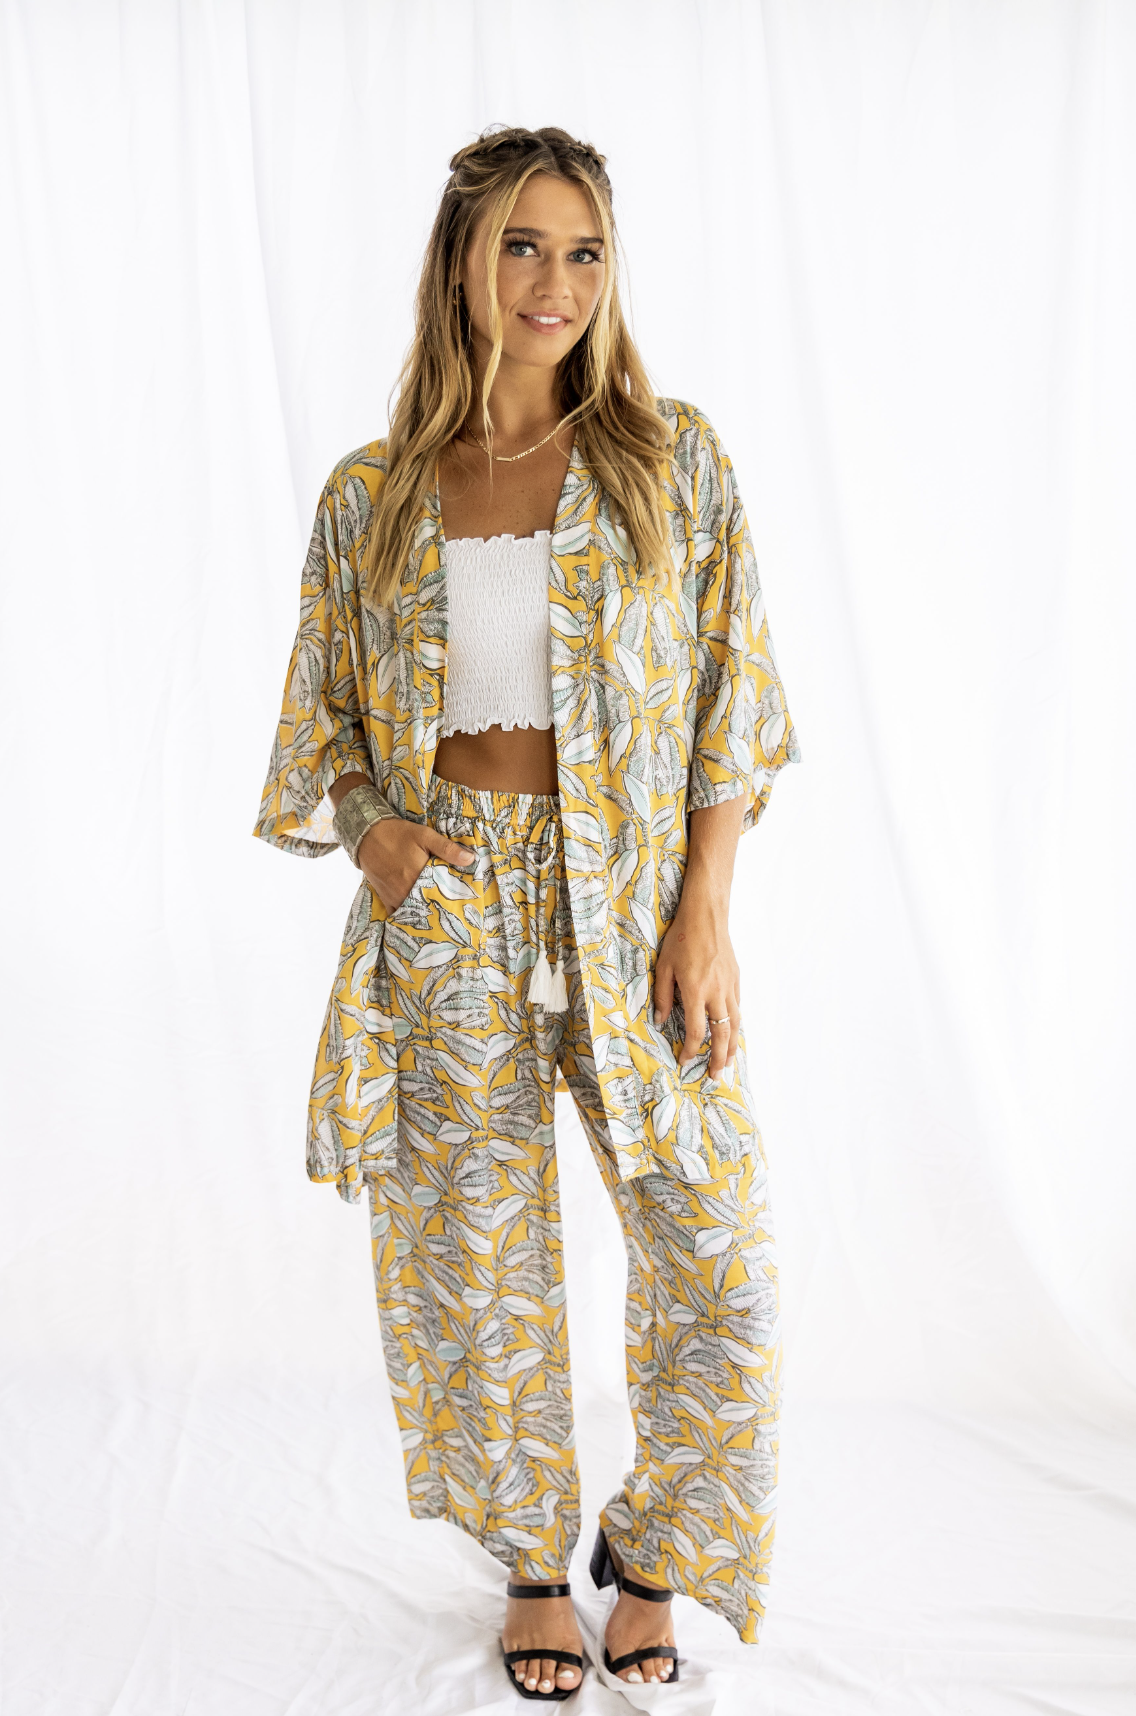 Plumeria Kimono Jacket - One Size Fits All